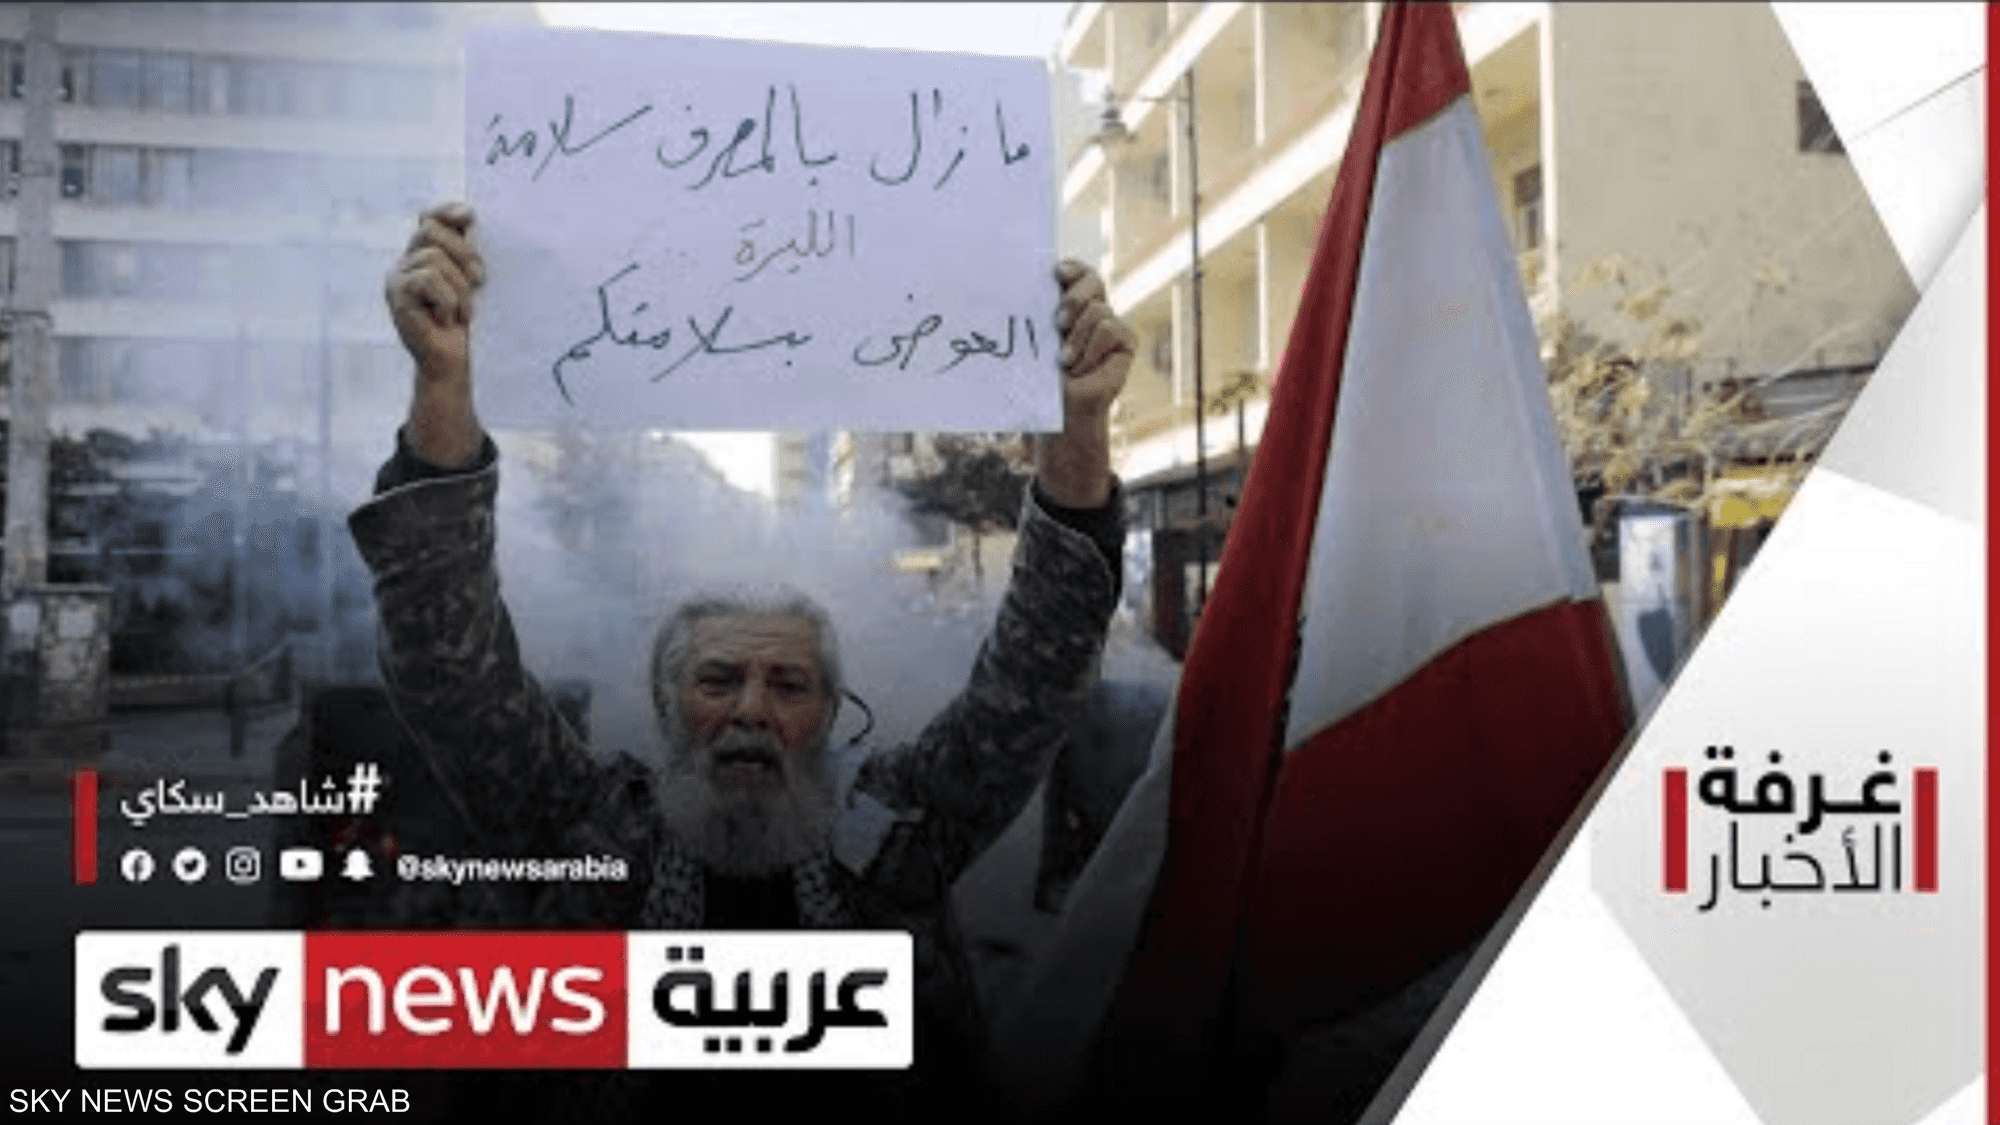 حركة ناشطة ومتسارعة لتأليف الحكومة في لبنان